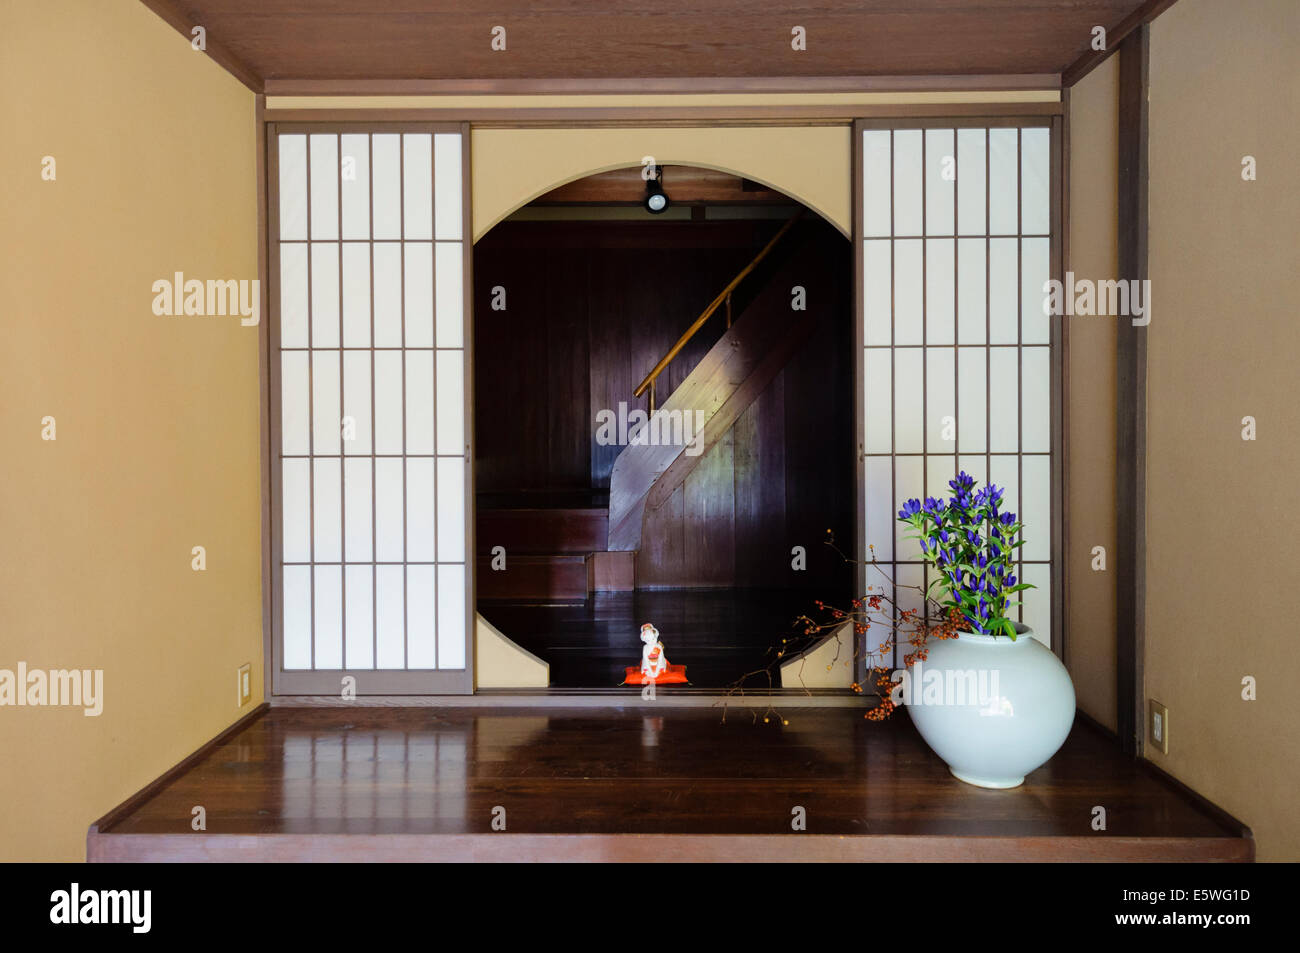 Entrée d'une ancienne chaya japonaise, ou une maison de thé traditionnelle montrant shoji (portes coulissantes de papier ciré translucide). Banque D'Images